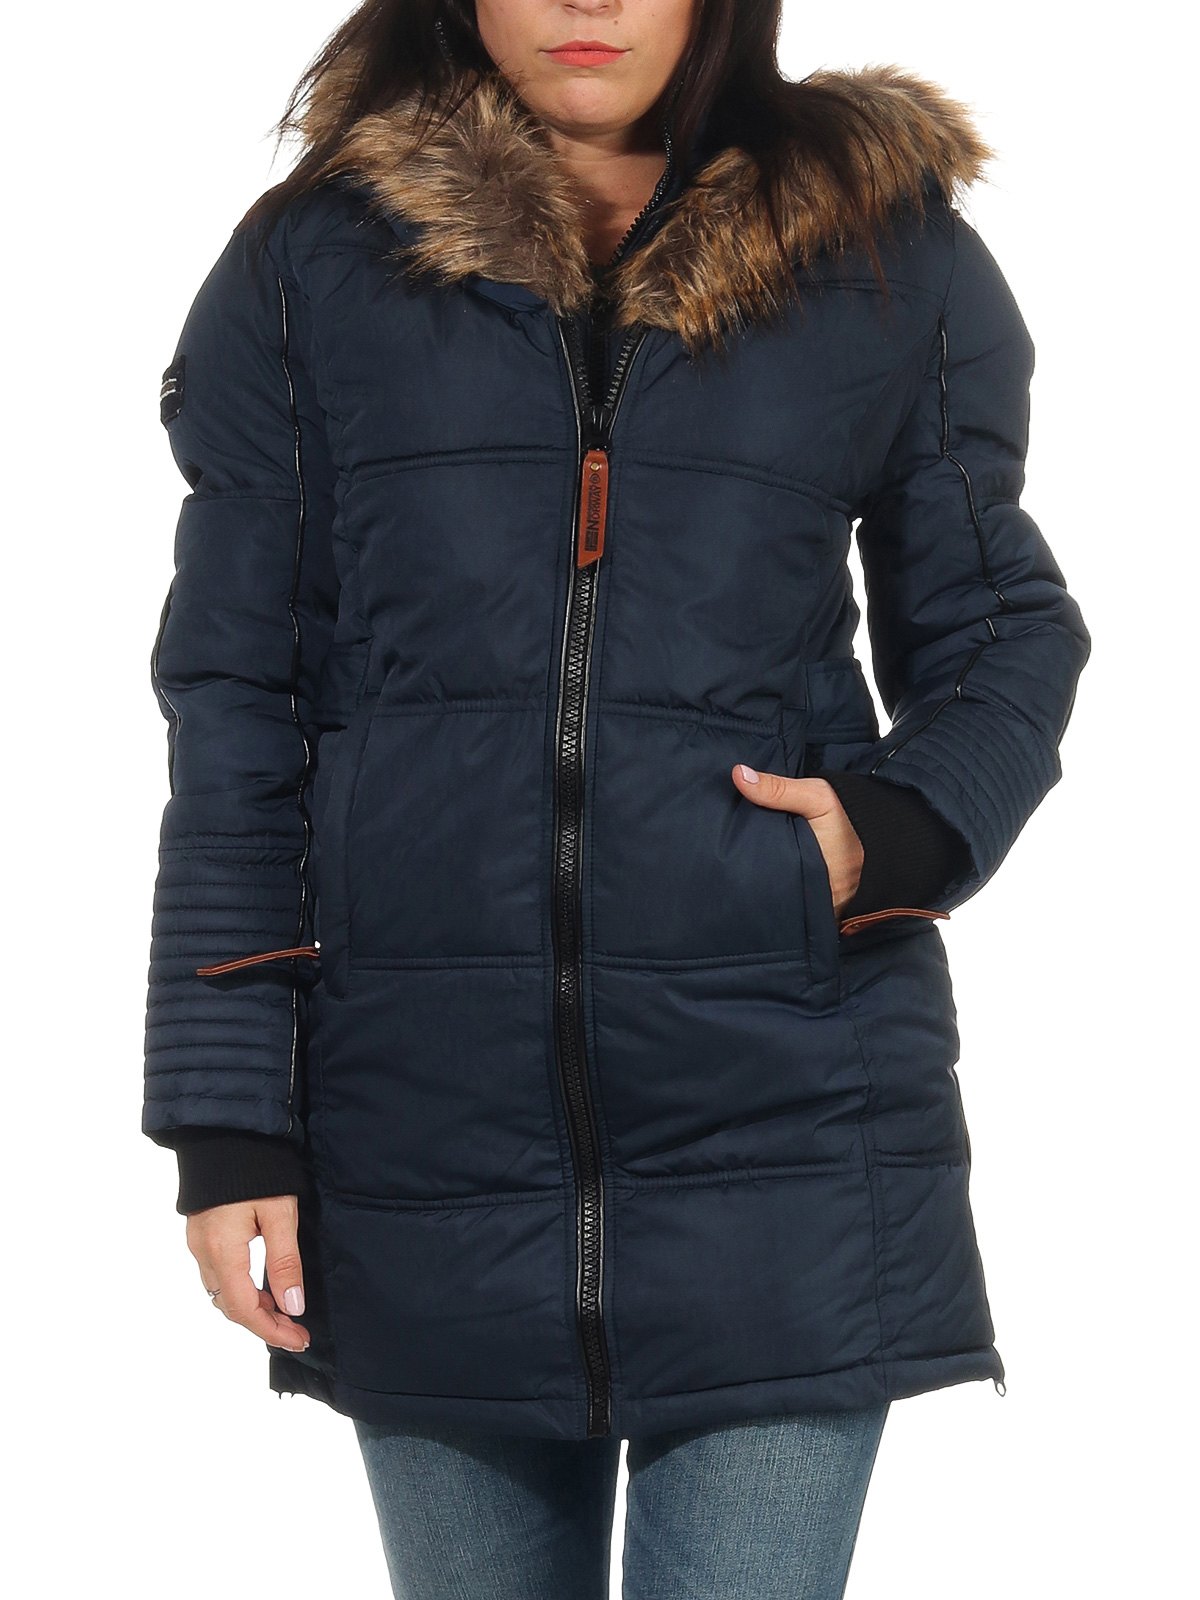 Geographical Norway warmer Damen Winter Mantel Jacke Coat Parka Winterjacke 